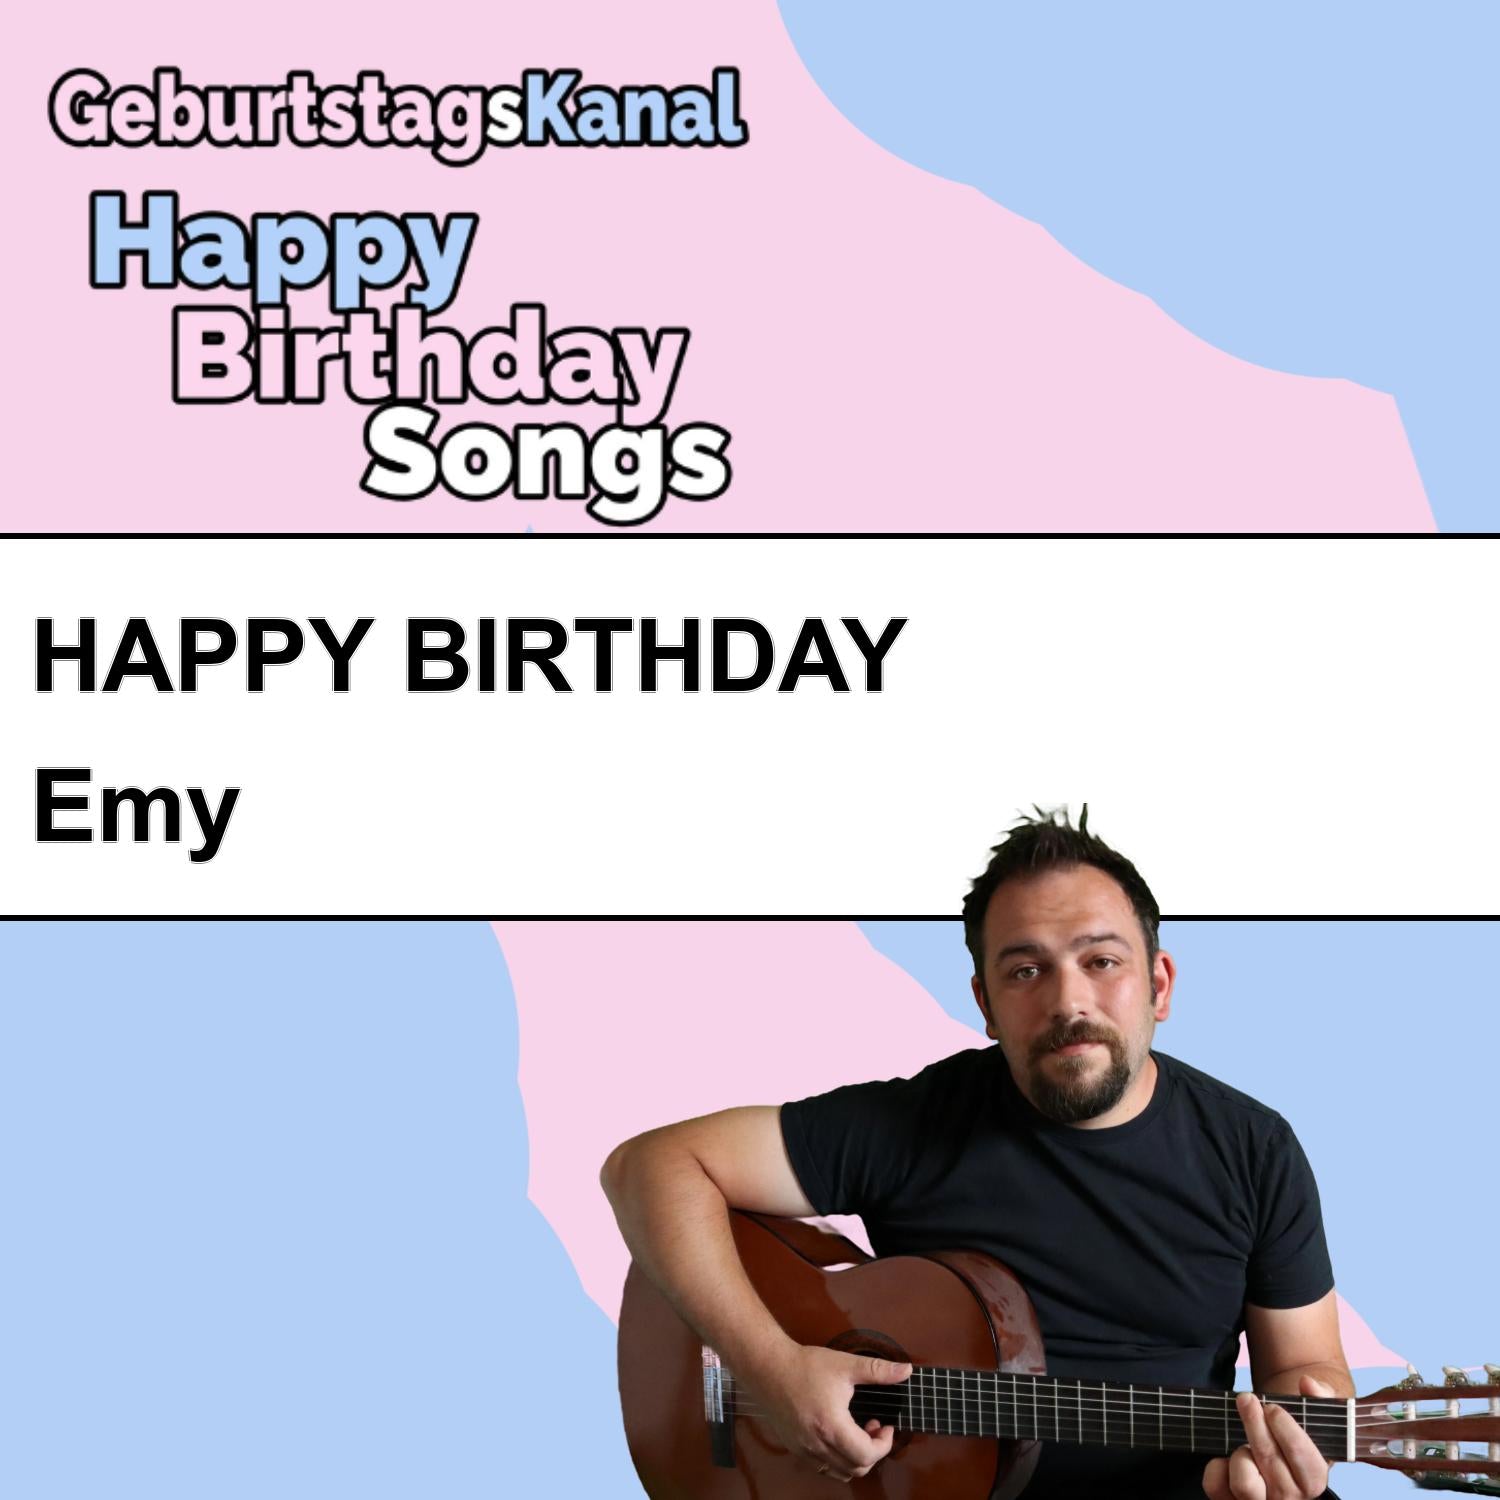 Produktbild Happy Birthday to you Emy mit Wunschgrußbotschaft